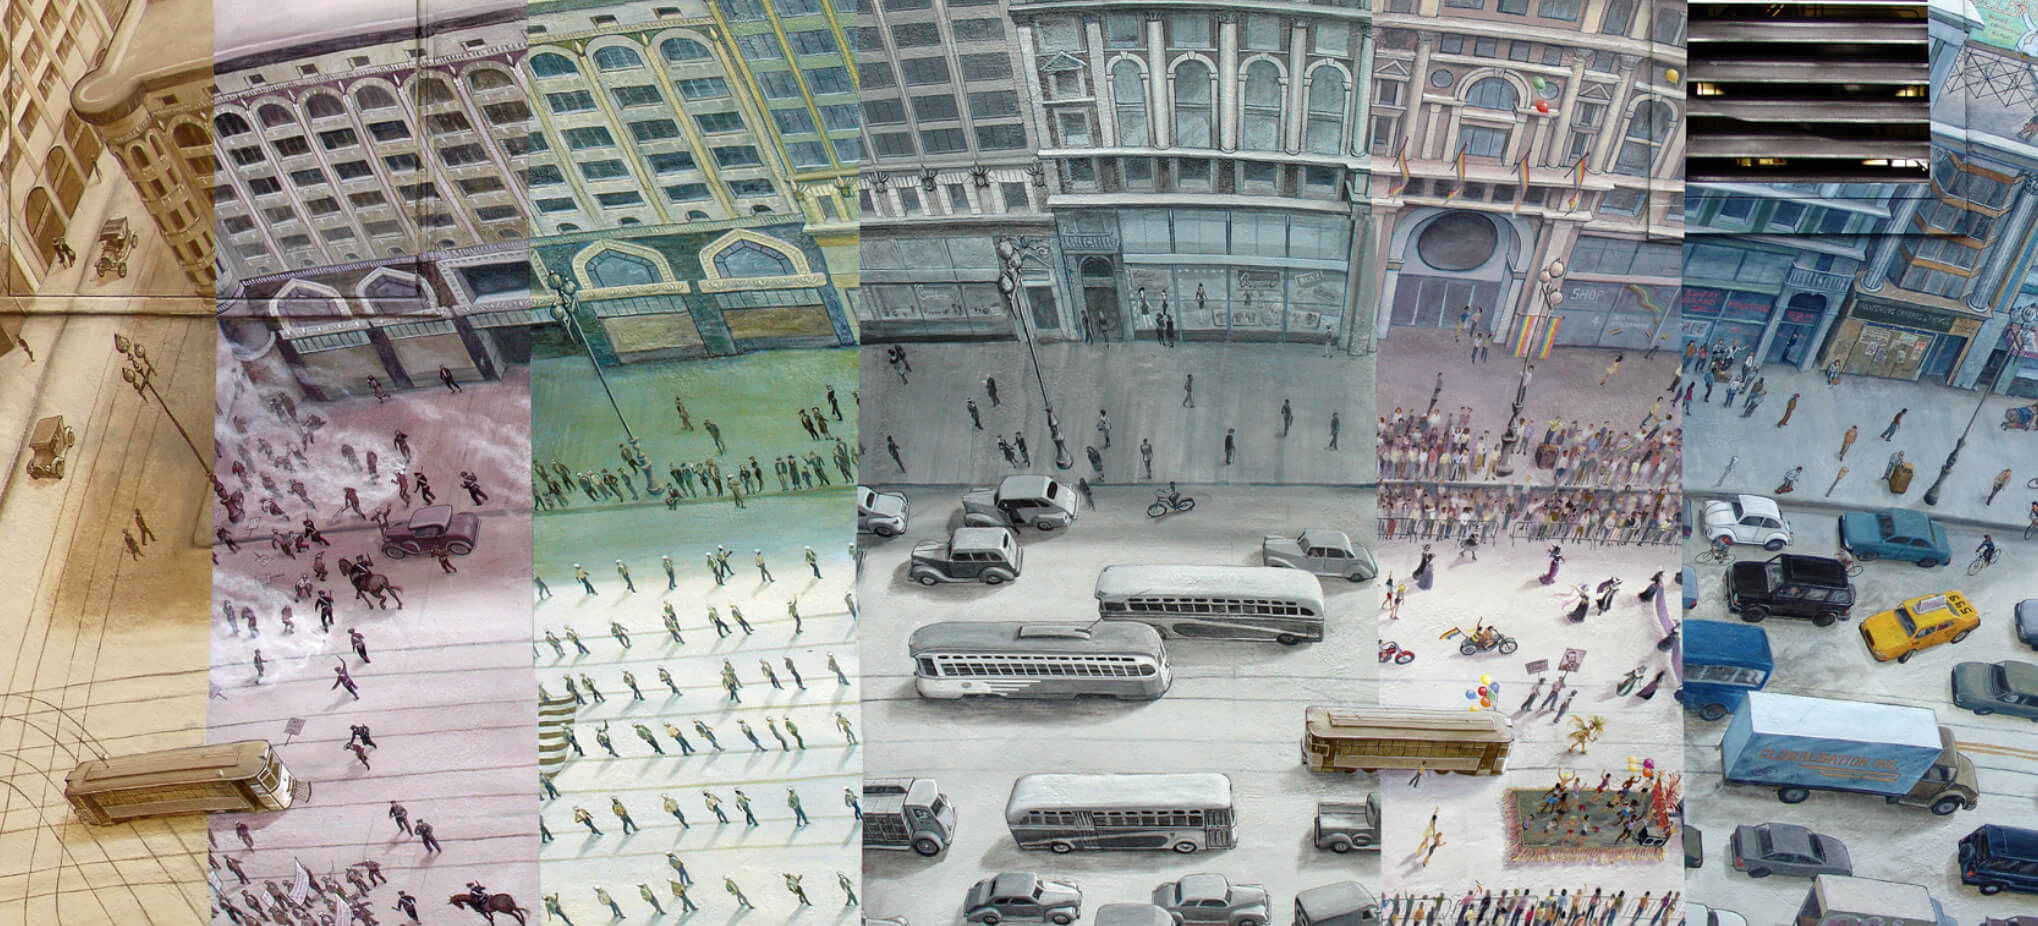 Vista de los diferentes paneles que aparecen en el mural de Market Street Railway